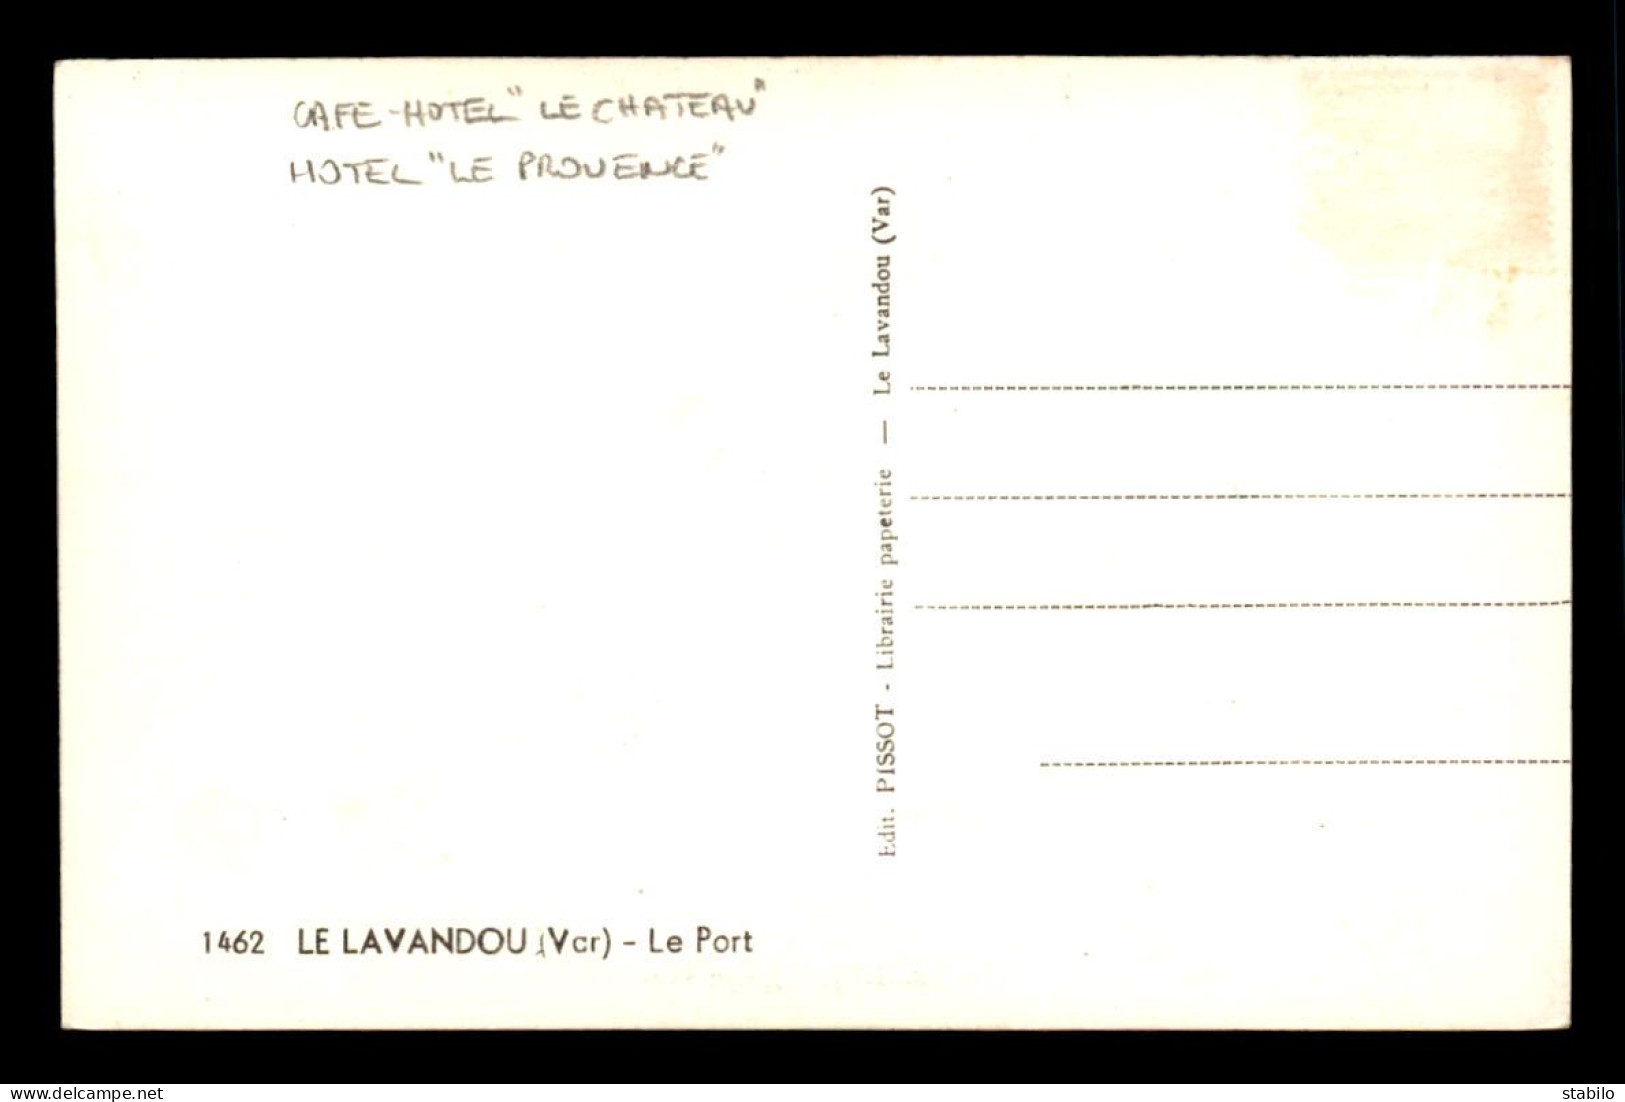 83 - LE LAVANDOU - LE PORT - CAFE-HOTEL "LE CHATEAU" - HOTEL "LE PROVENCE" - Le Lavandou